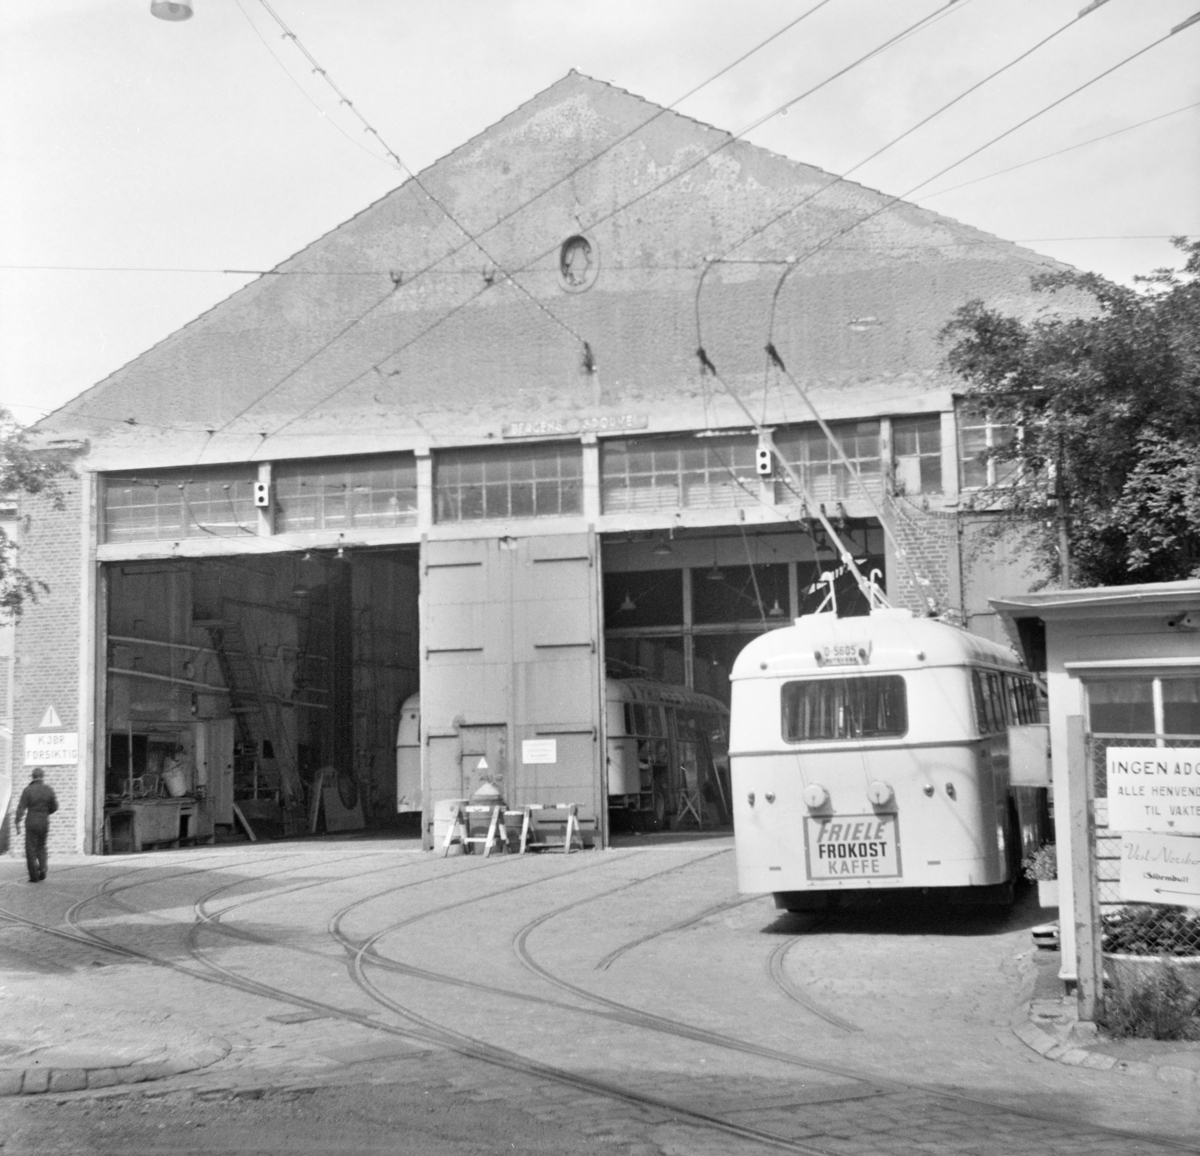 Bergen Sporveiers trikkestall er gjort om til garasje for trolleybusser. Trolleybyss type Munch står foran garasjen.